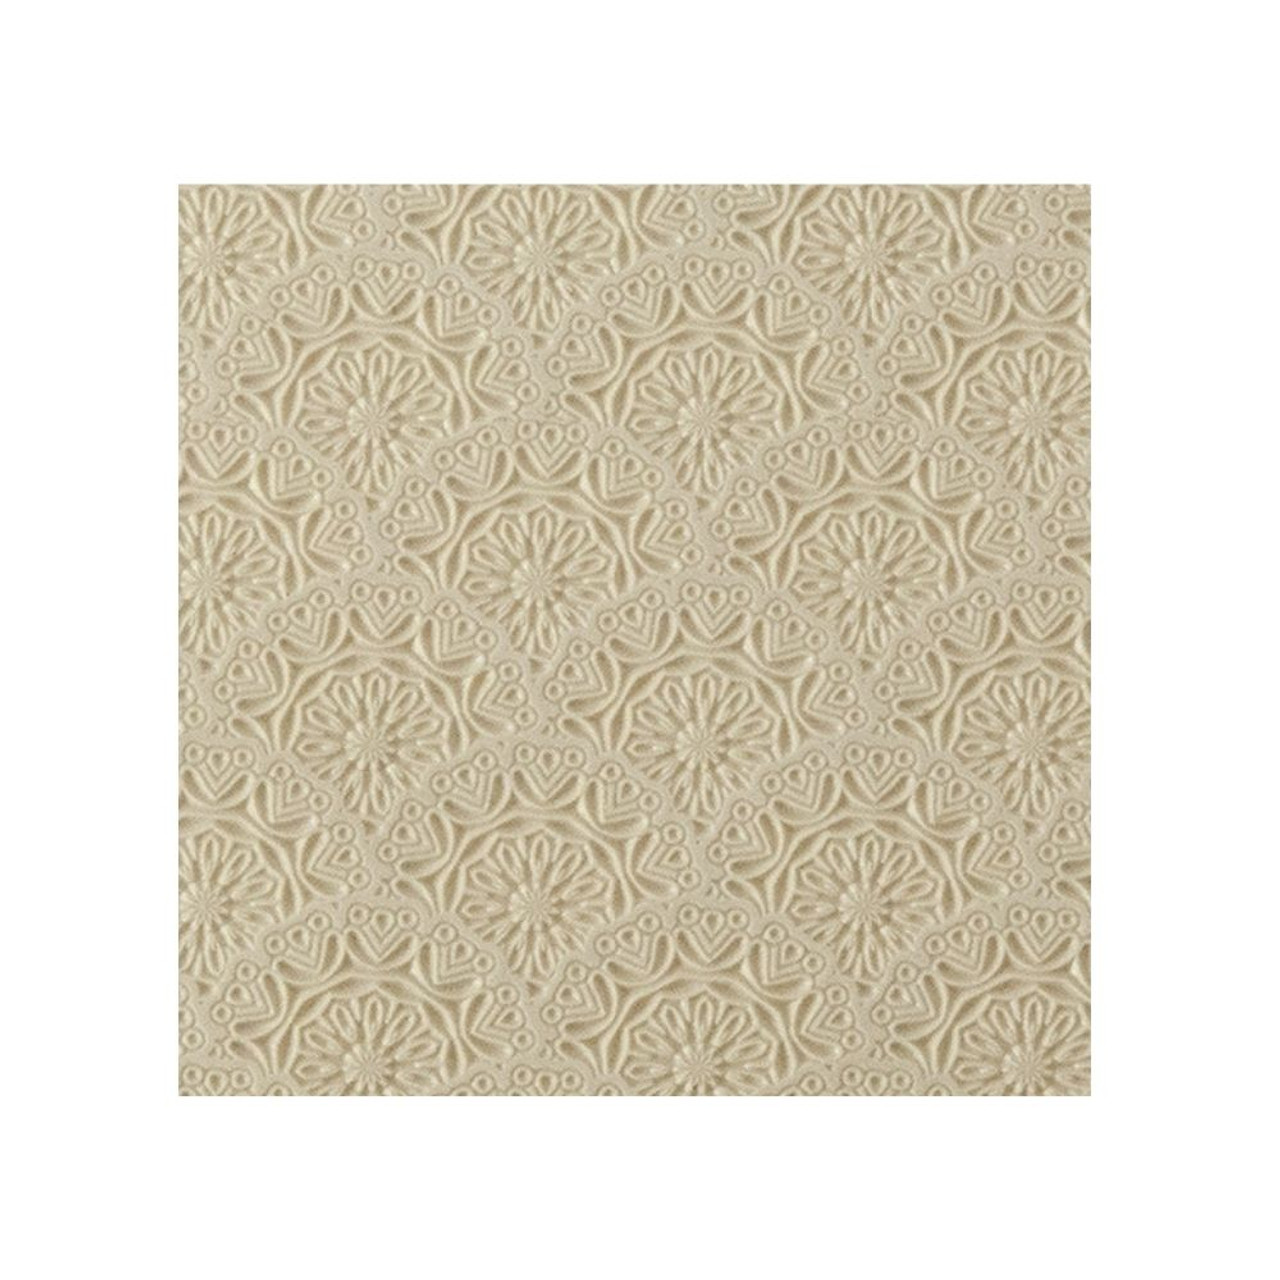 Texture Tile - Medallion Motif 103-TTL-873